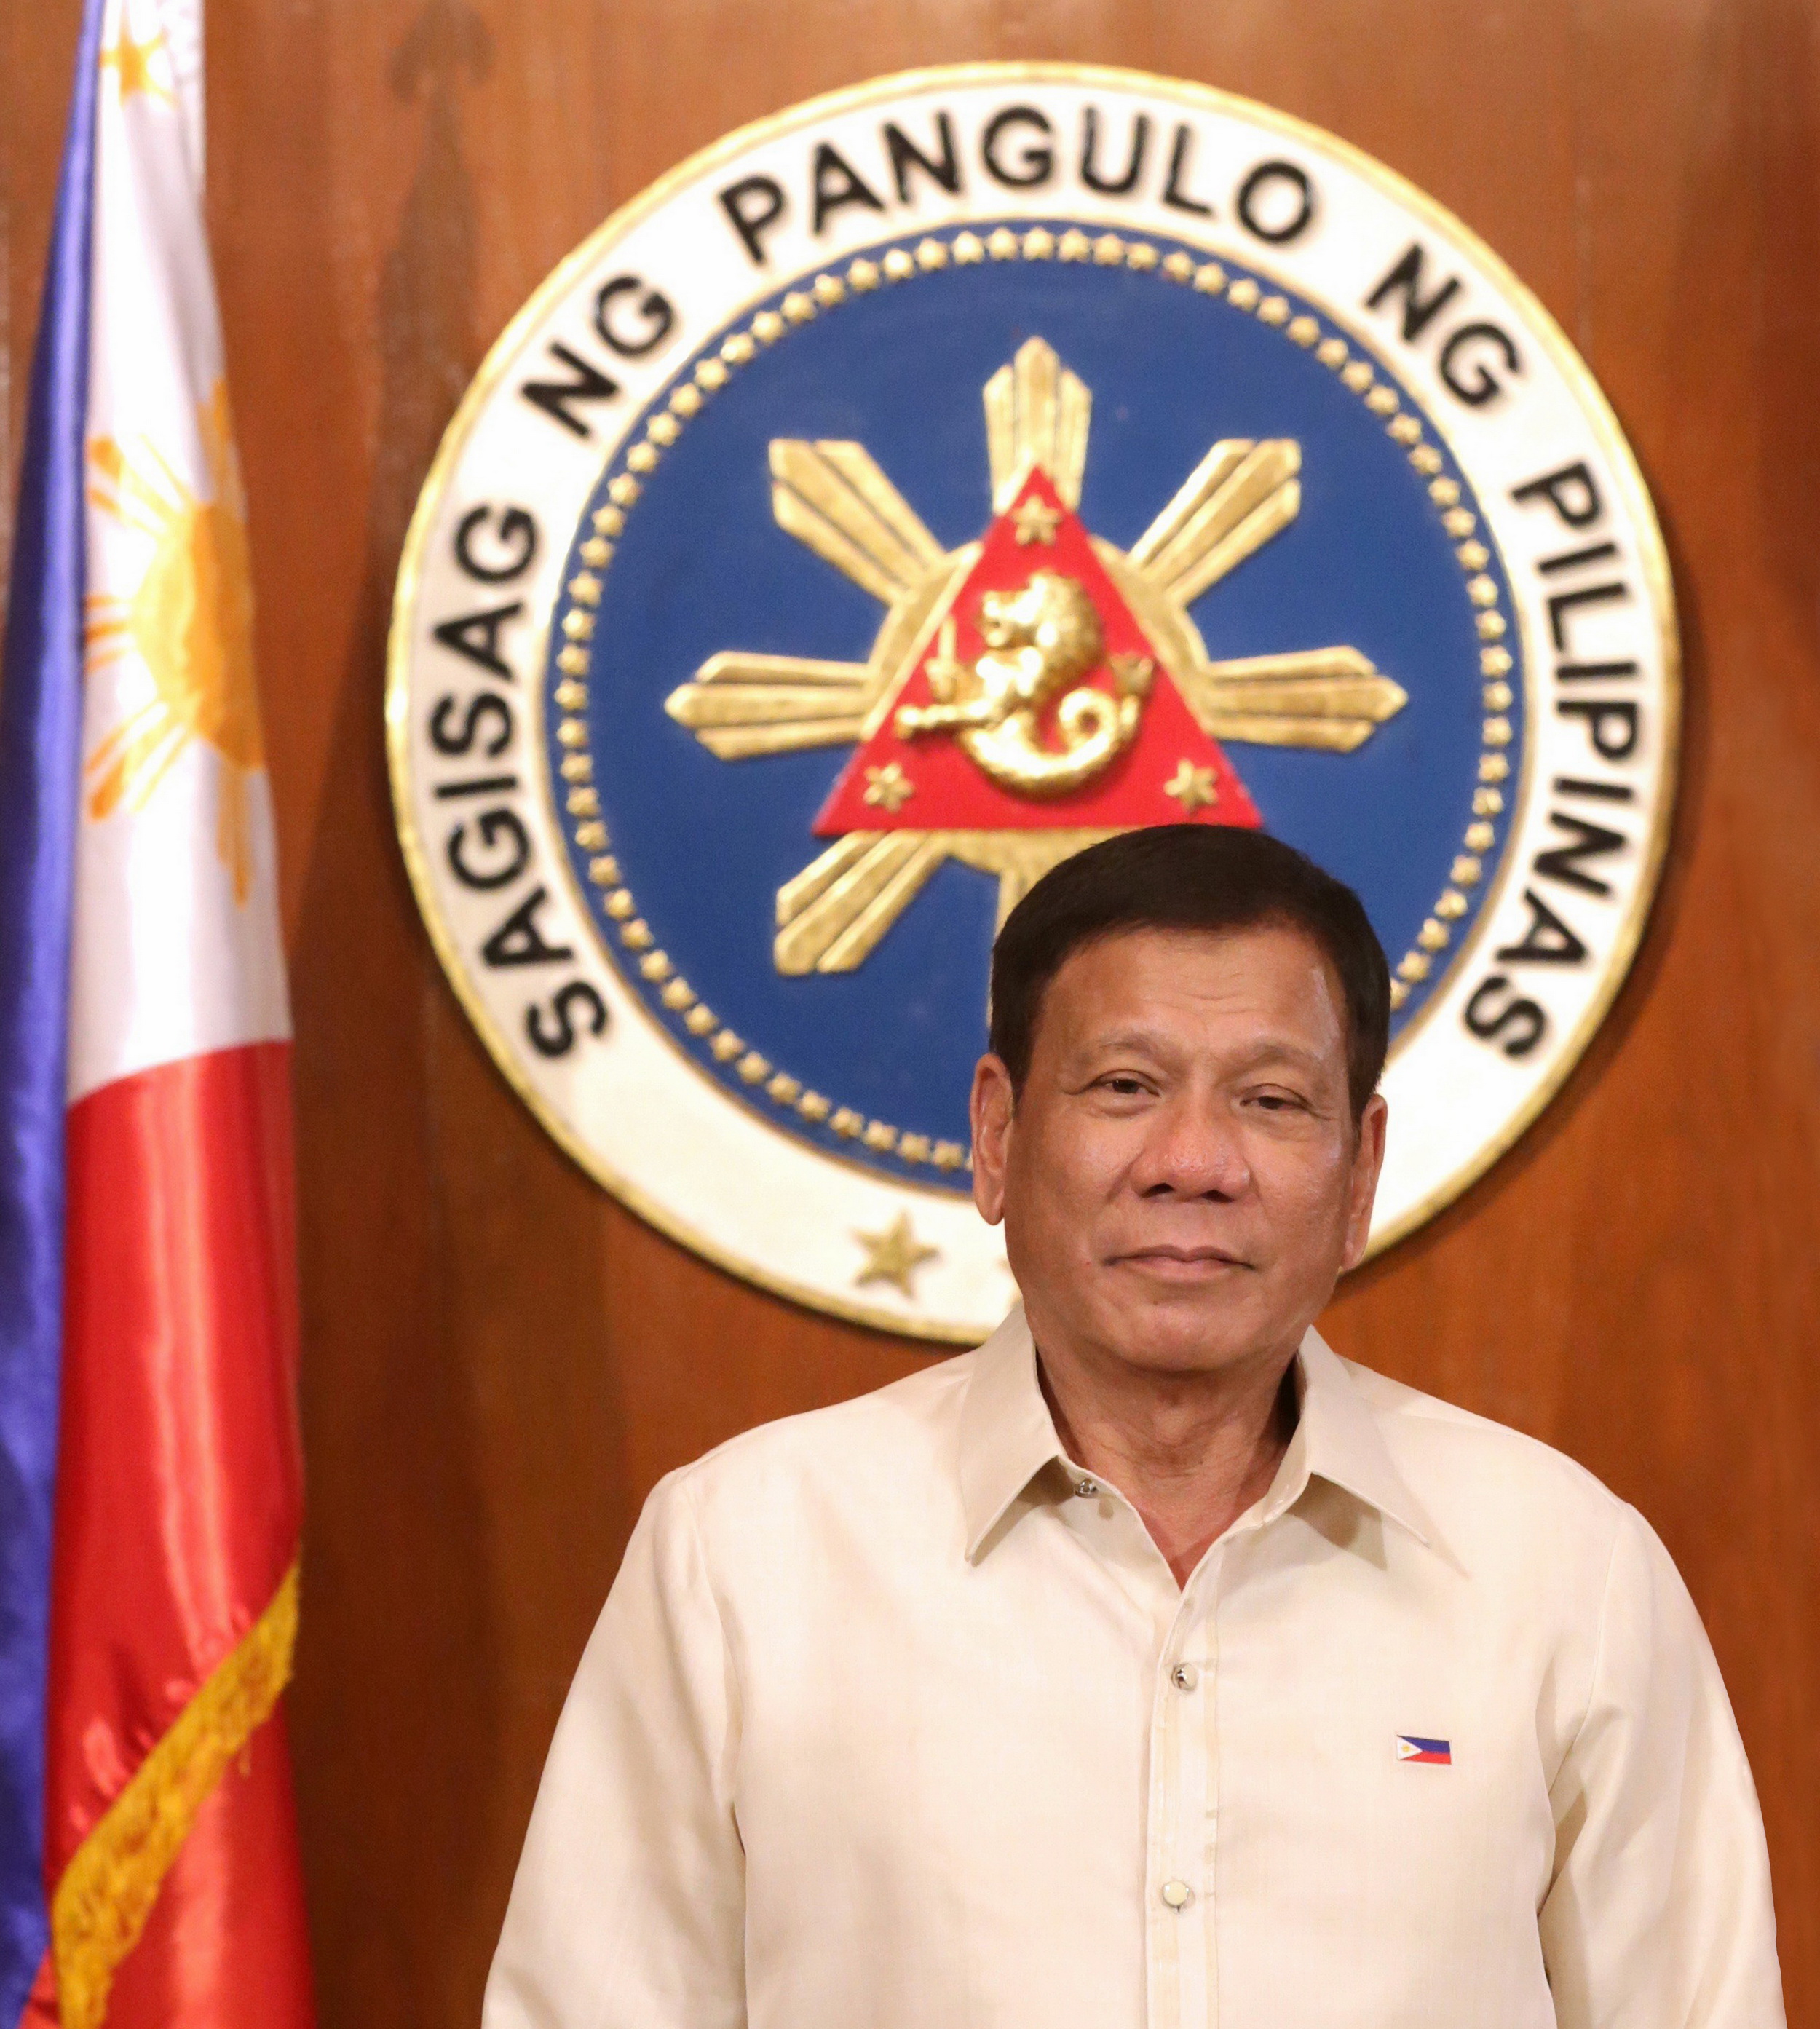 Hon. Rodrigo Roa Duterte